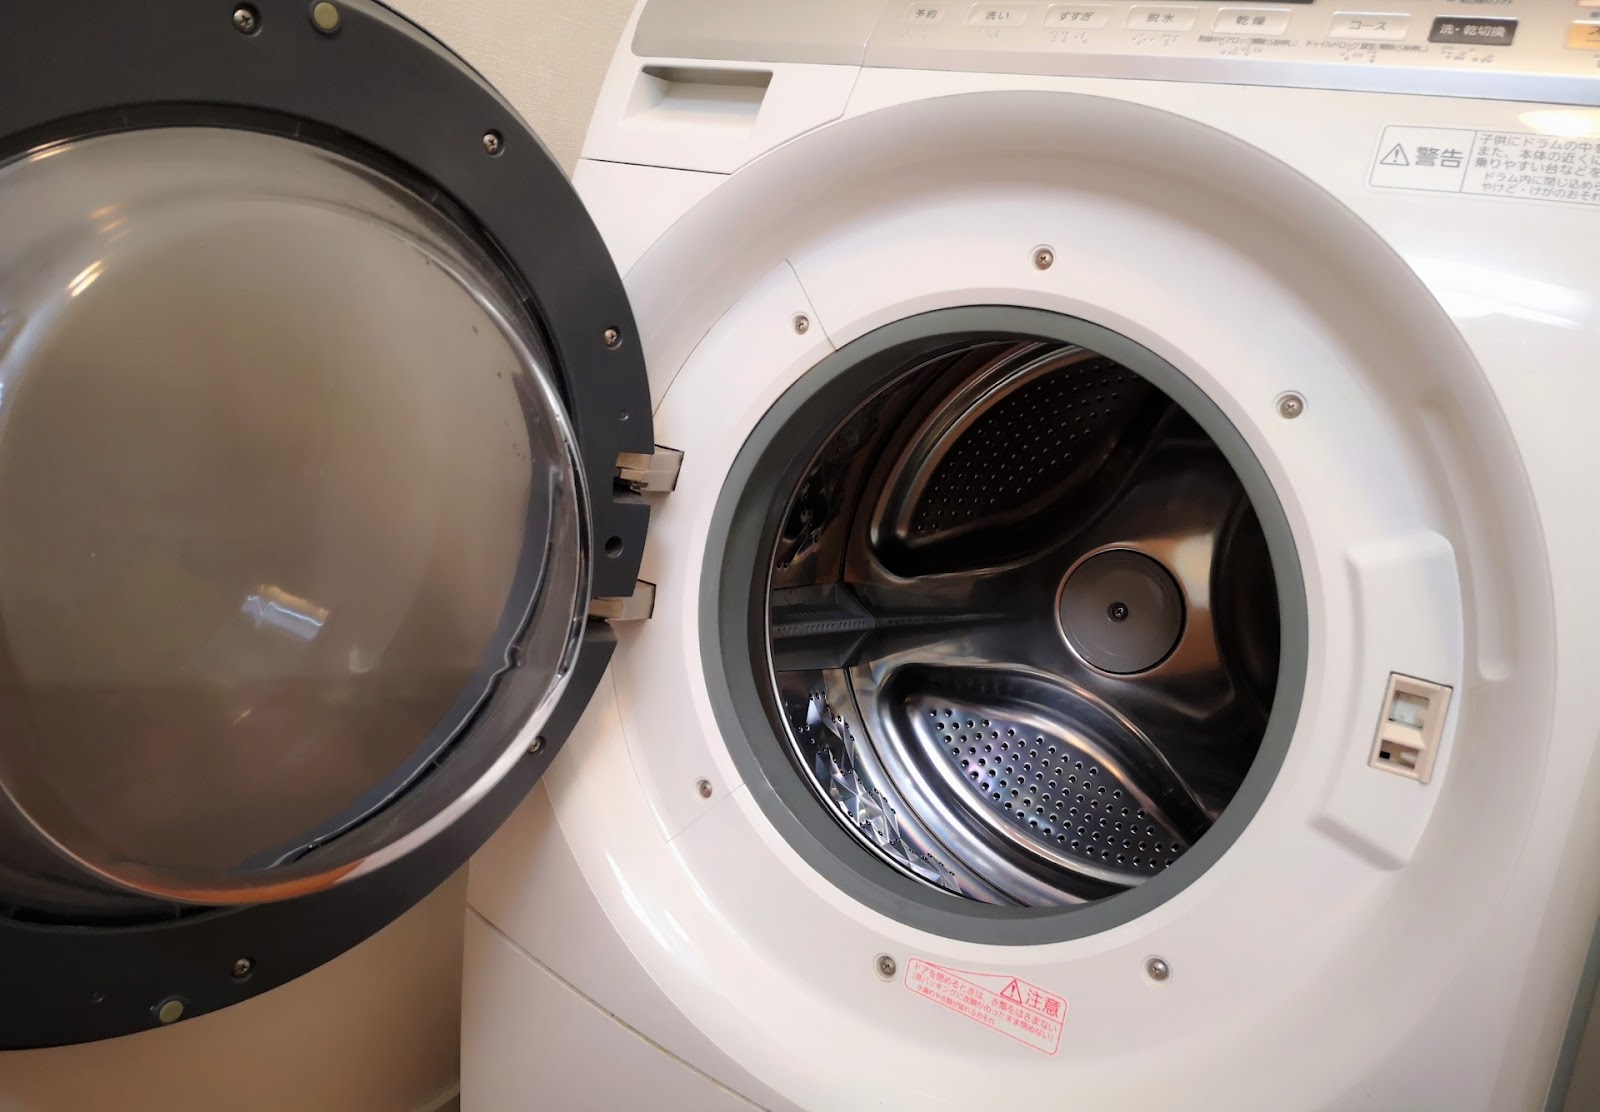 予約販売品 洗濯機 ドラム式 8.0kg〜 トウシバ TW-127XP1L-W 2人以上家族向け